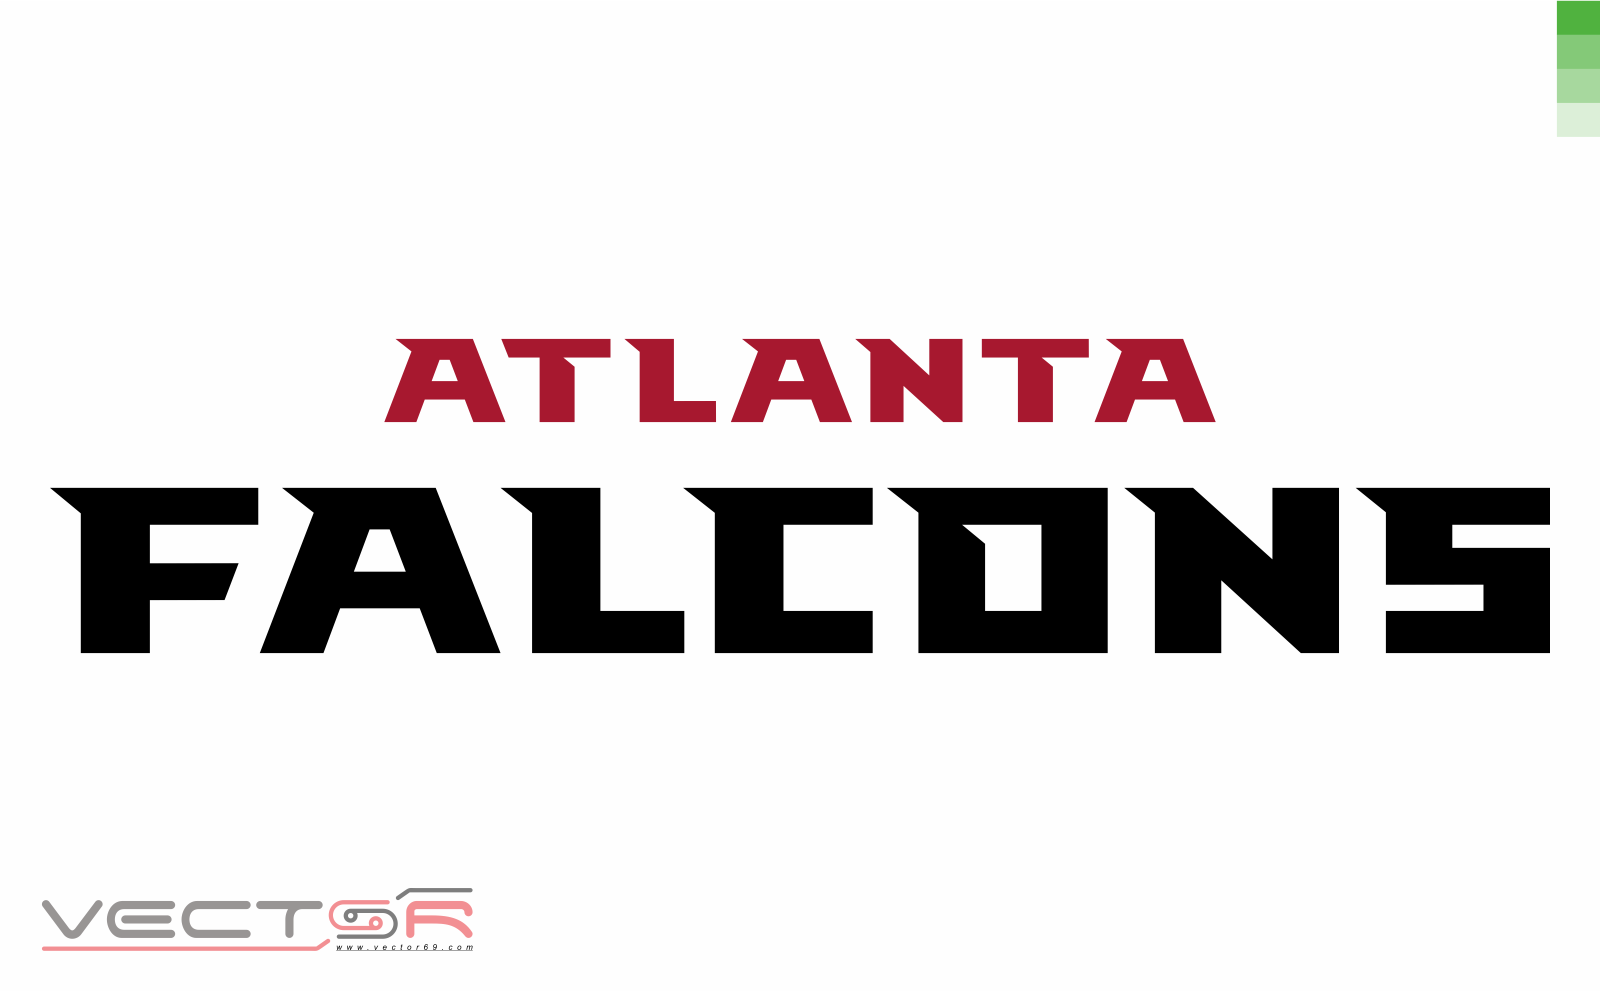 Atlanta Falcons Wordmark - Download Vector File CDR (CorelDraw)